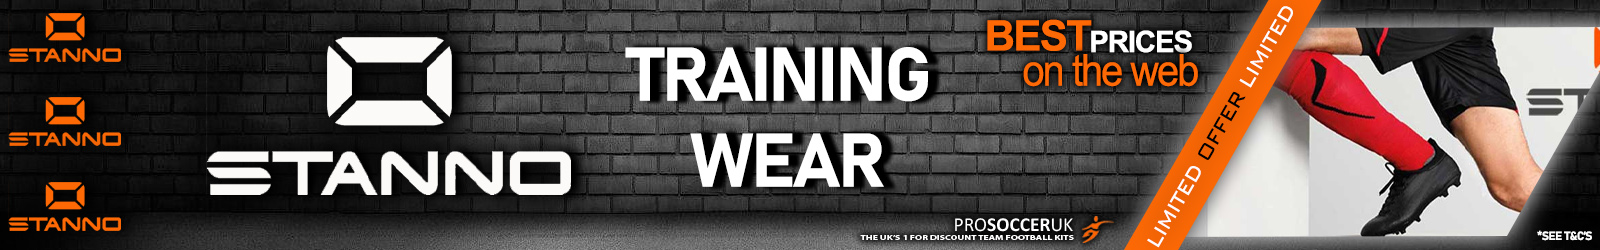 Stanno Training Wear